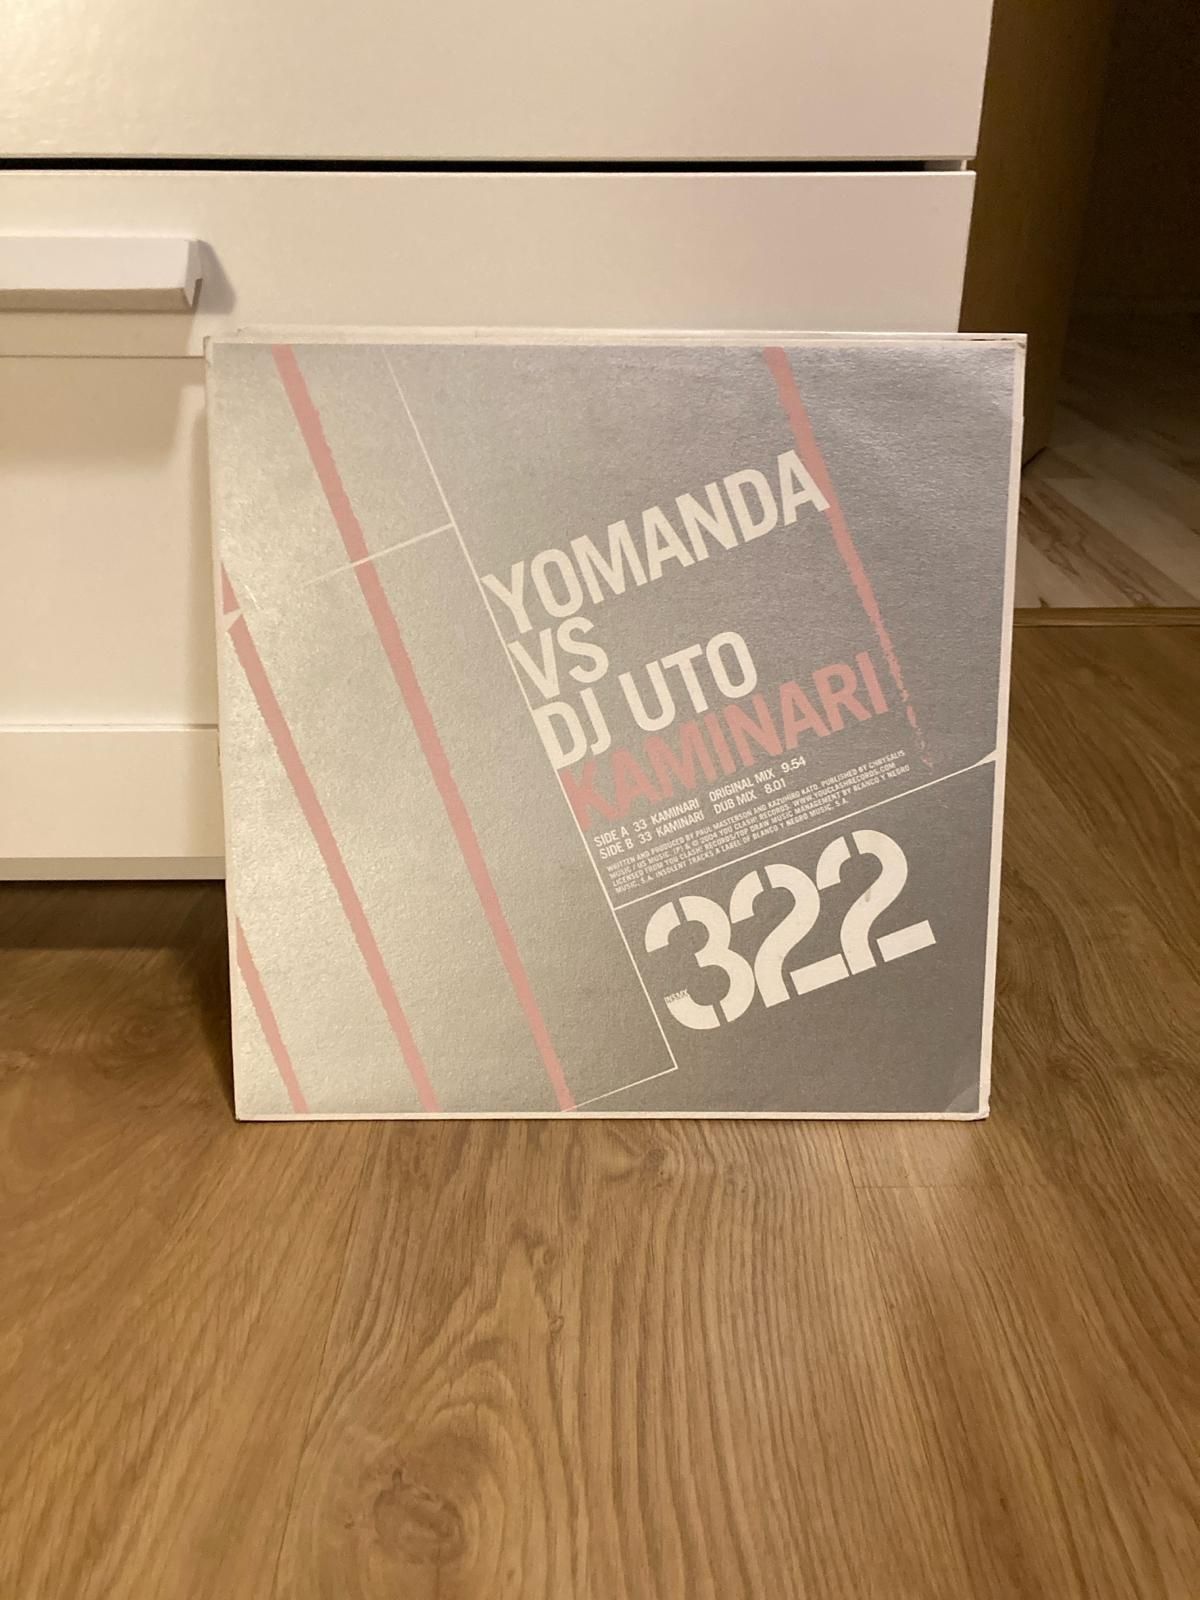 Yomanda Vs DJ Uto – Kaminari winyl trance